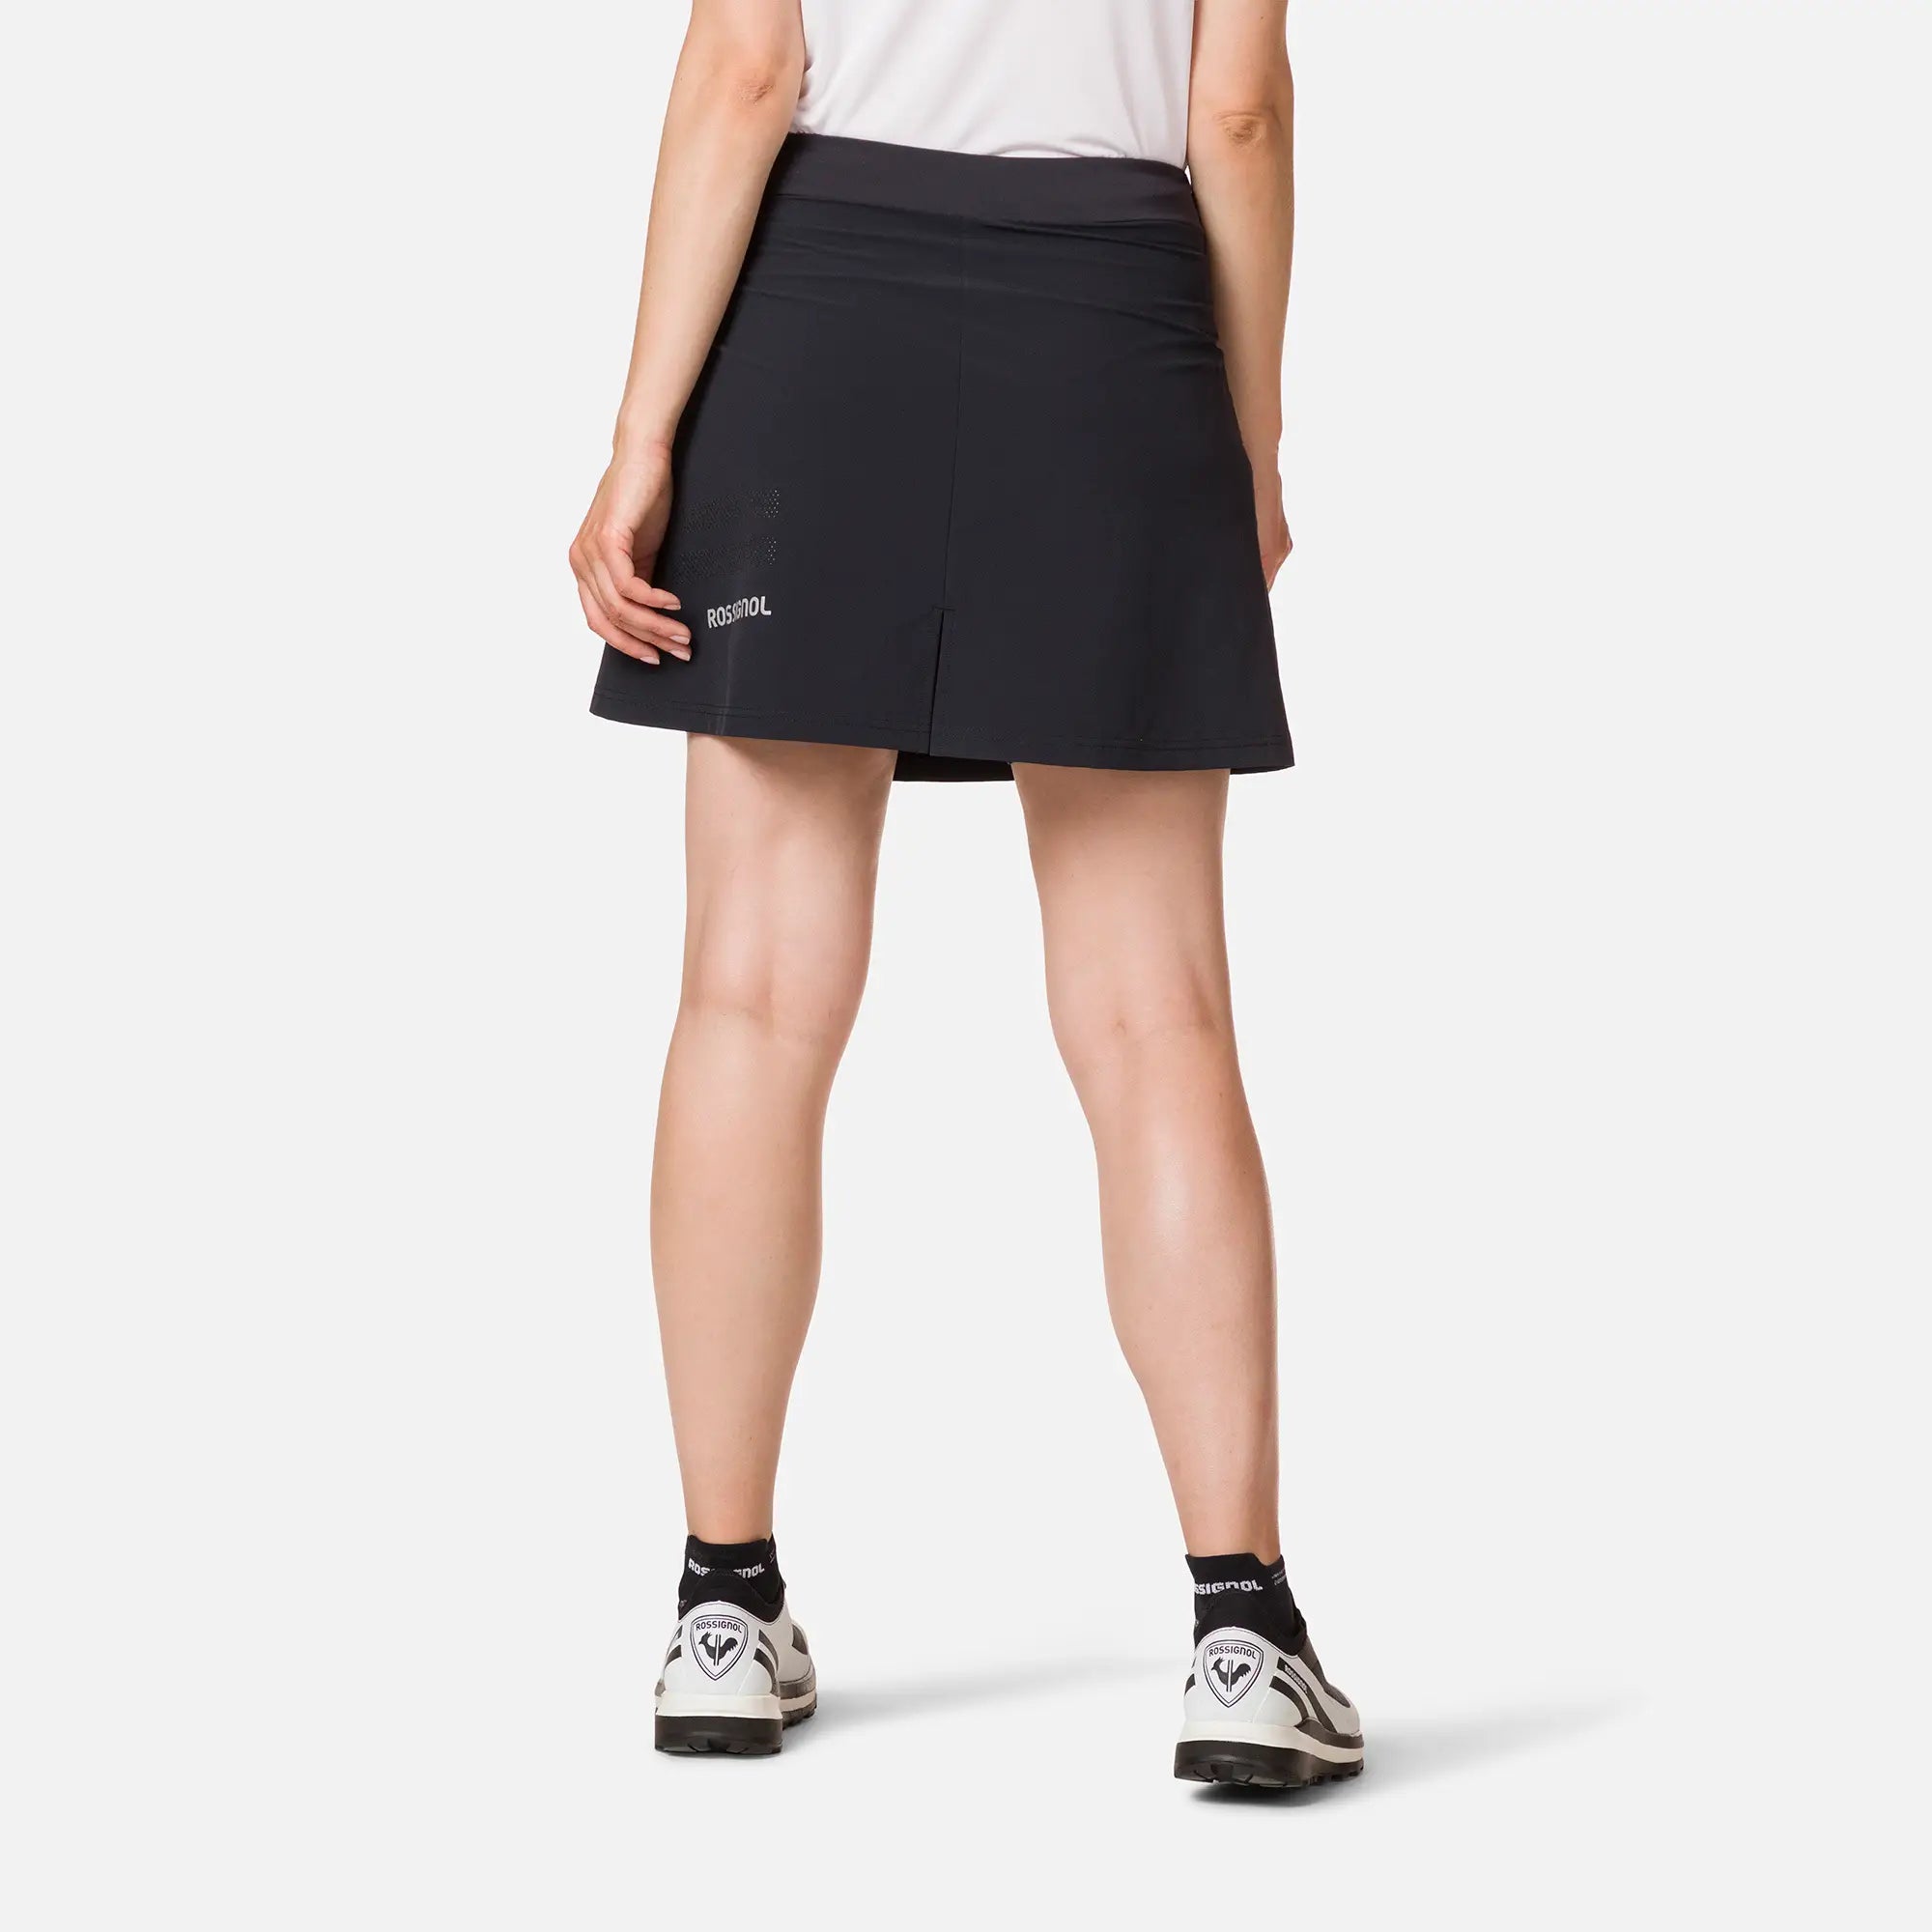 Womens Lightweight Breathable Skirt - Black